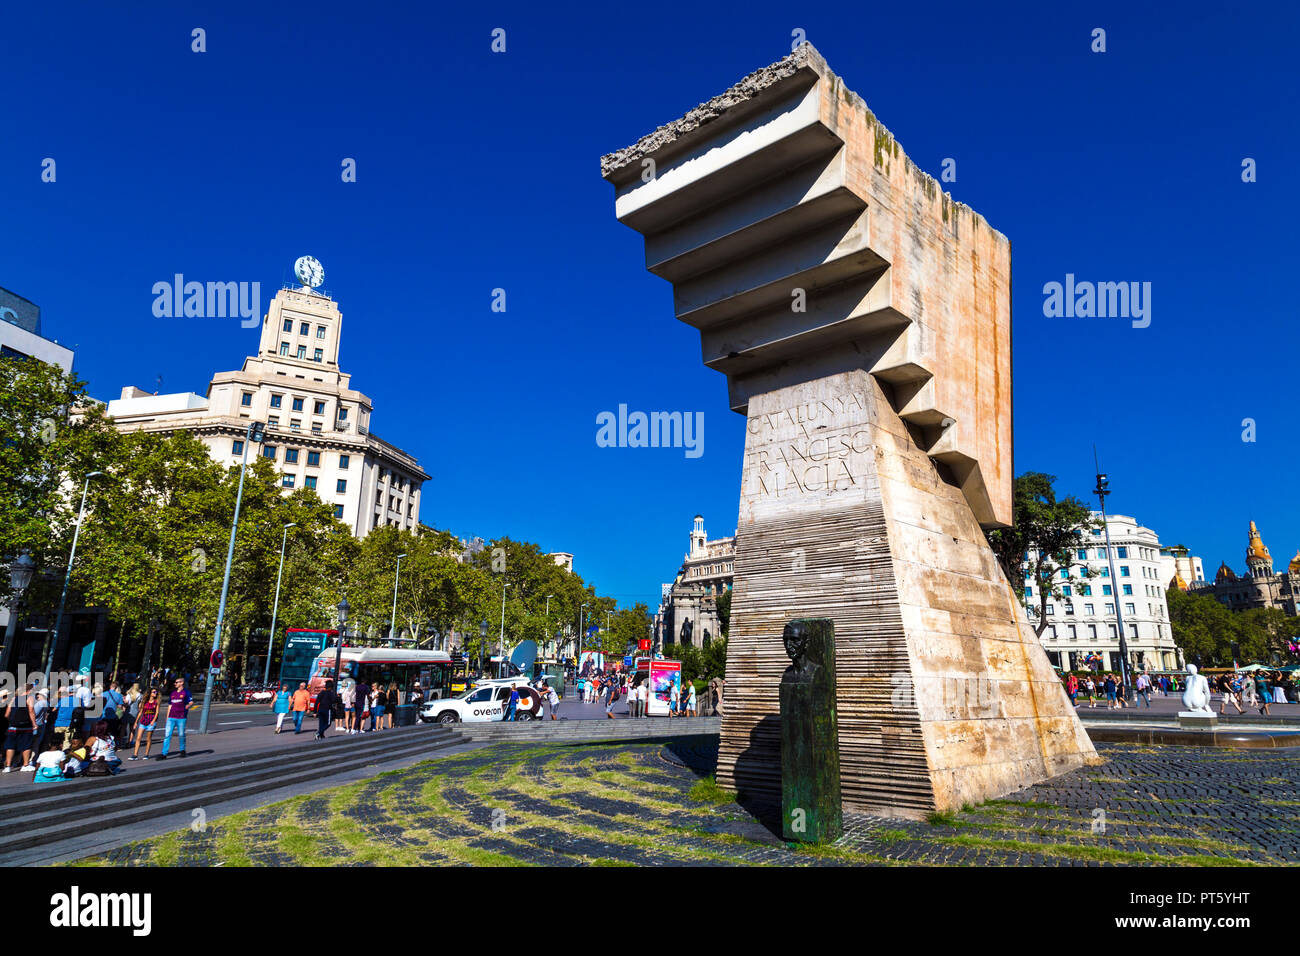 Denkmal für Katalanische politischer Führer Francesc Macià von Bildhauer Josep Maria Subirachs, Plaça de Catalunya, Barcelona, Spanien Stockfoto